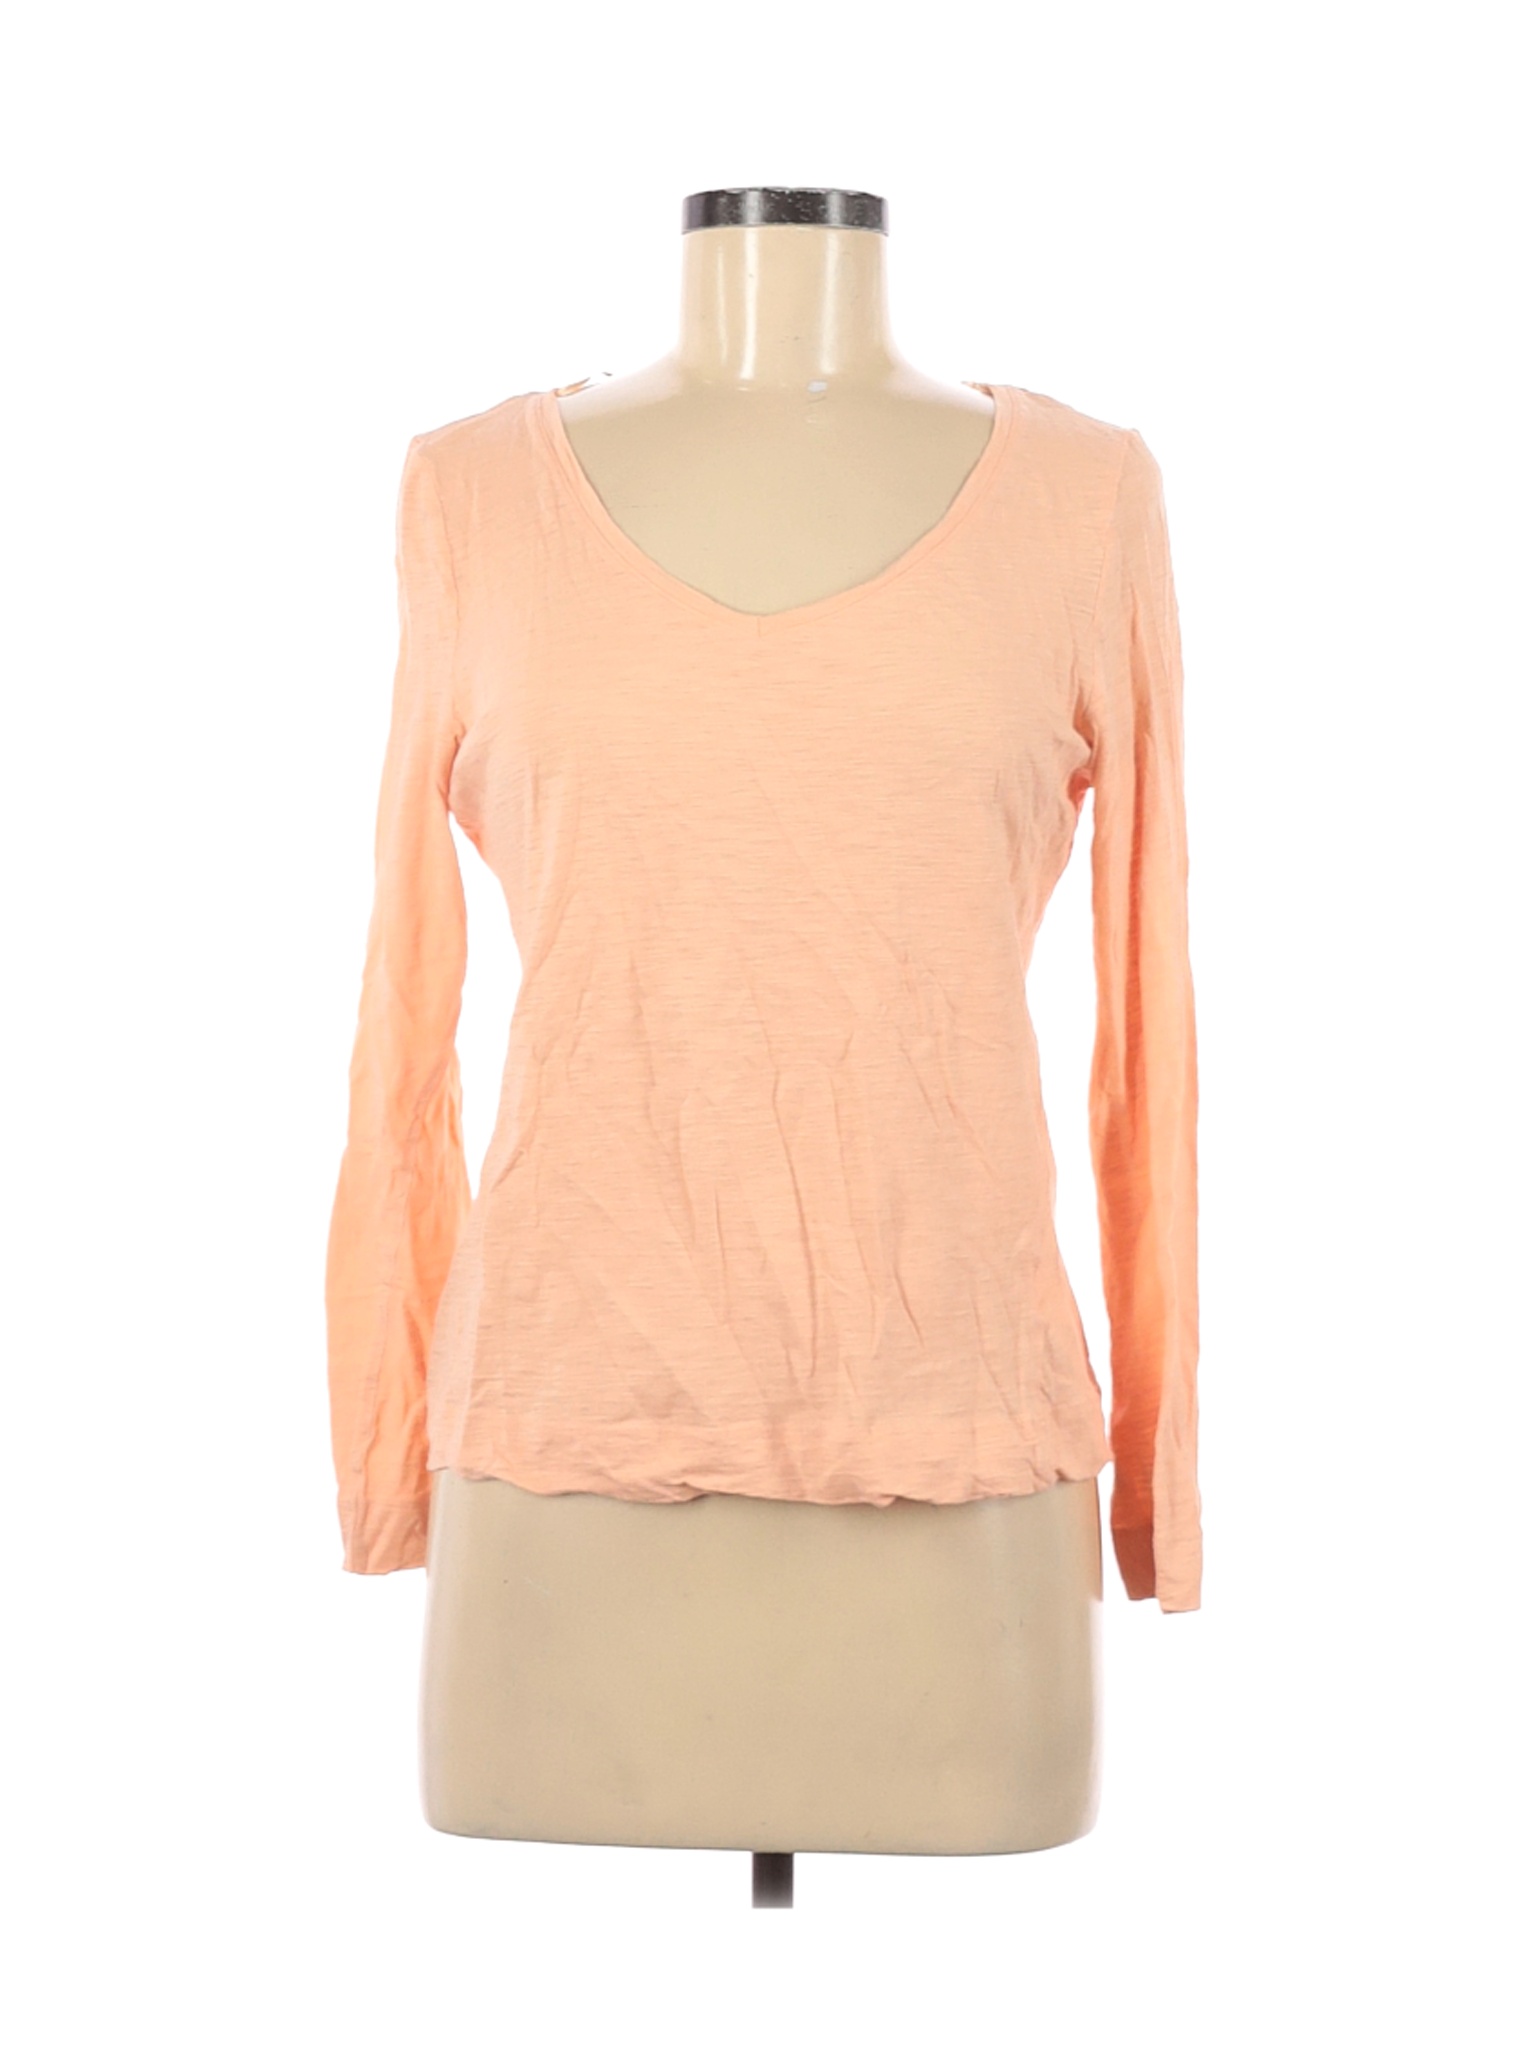 H&M Women Pink Long Sleeve T-Shirt M | eBay